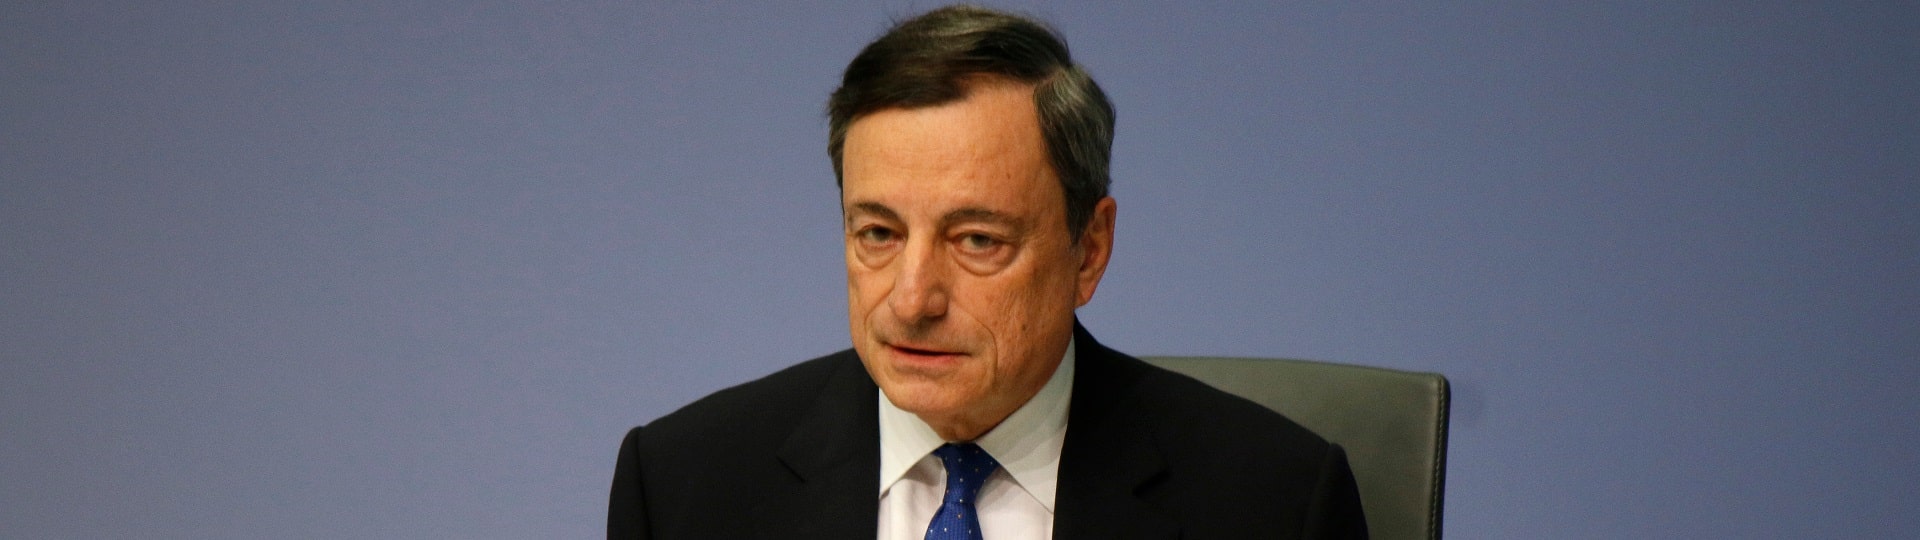 Mario Draghi bude končit ve své funkci